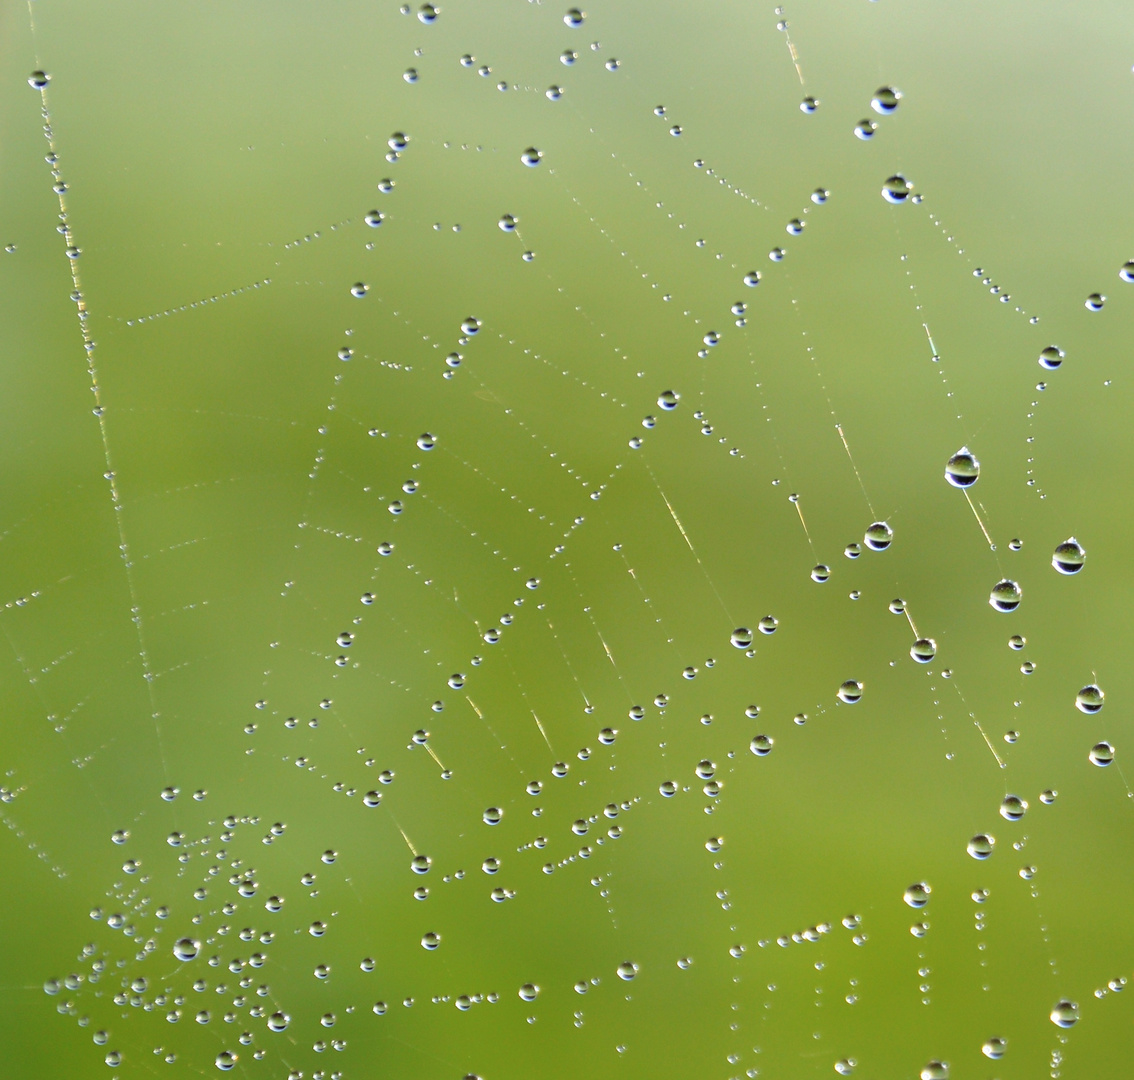 aufgehangene Wassertropfen / a spider web full of water droplets